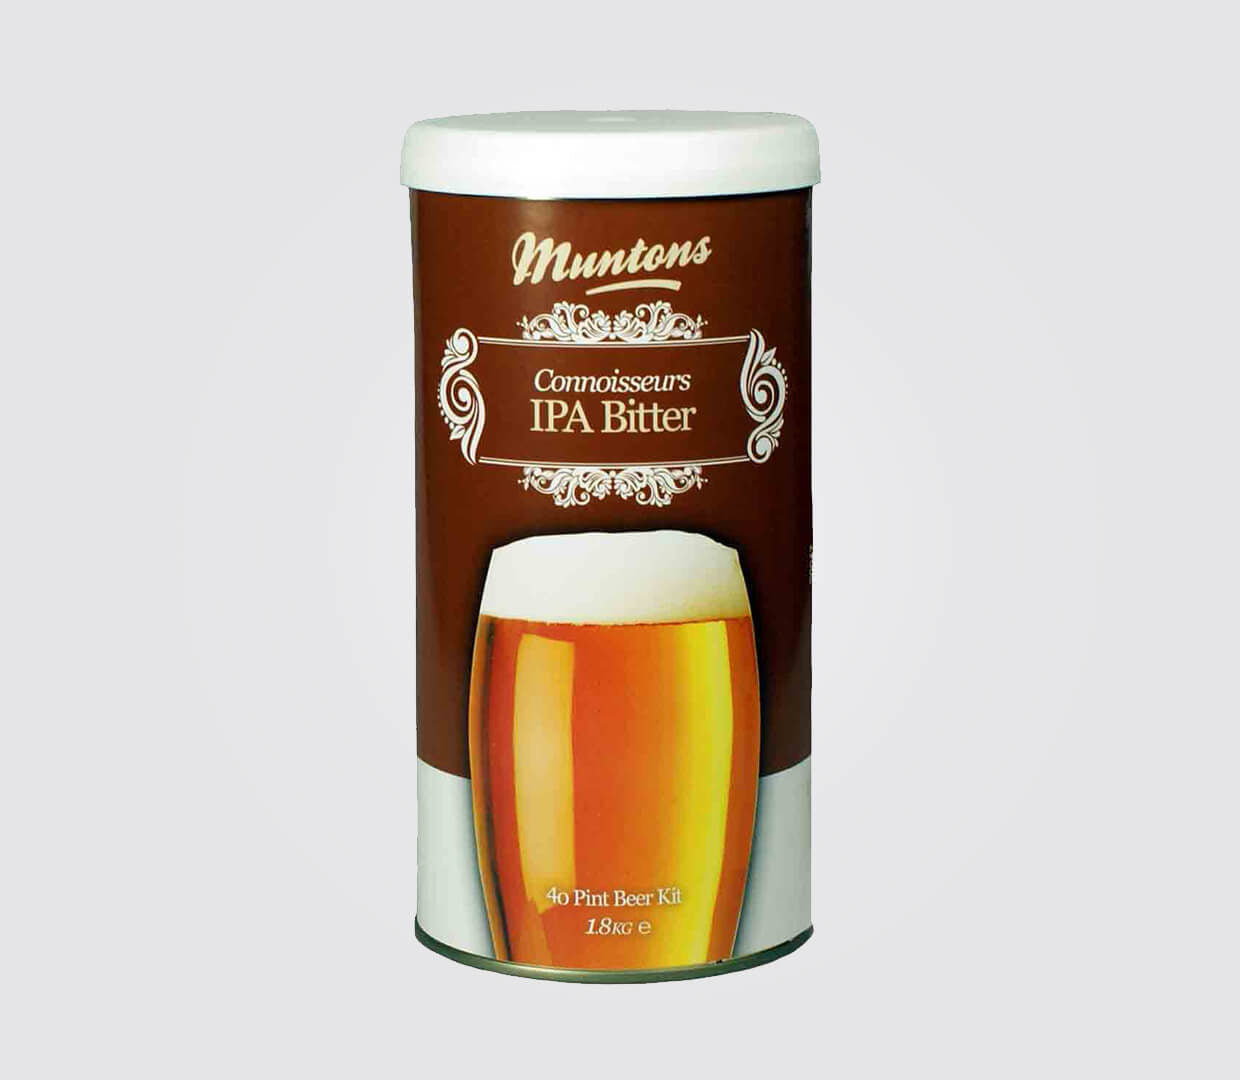 Muntons Connoisseurs Range IPA Bitter 1.8kg - All Things Fermented | Home Brew Shop NZ | Supplies | Equipment